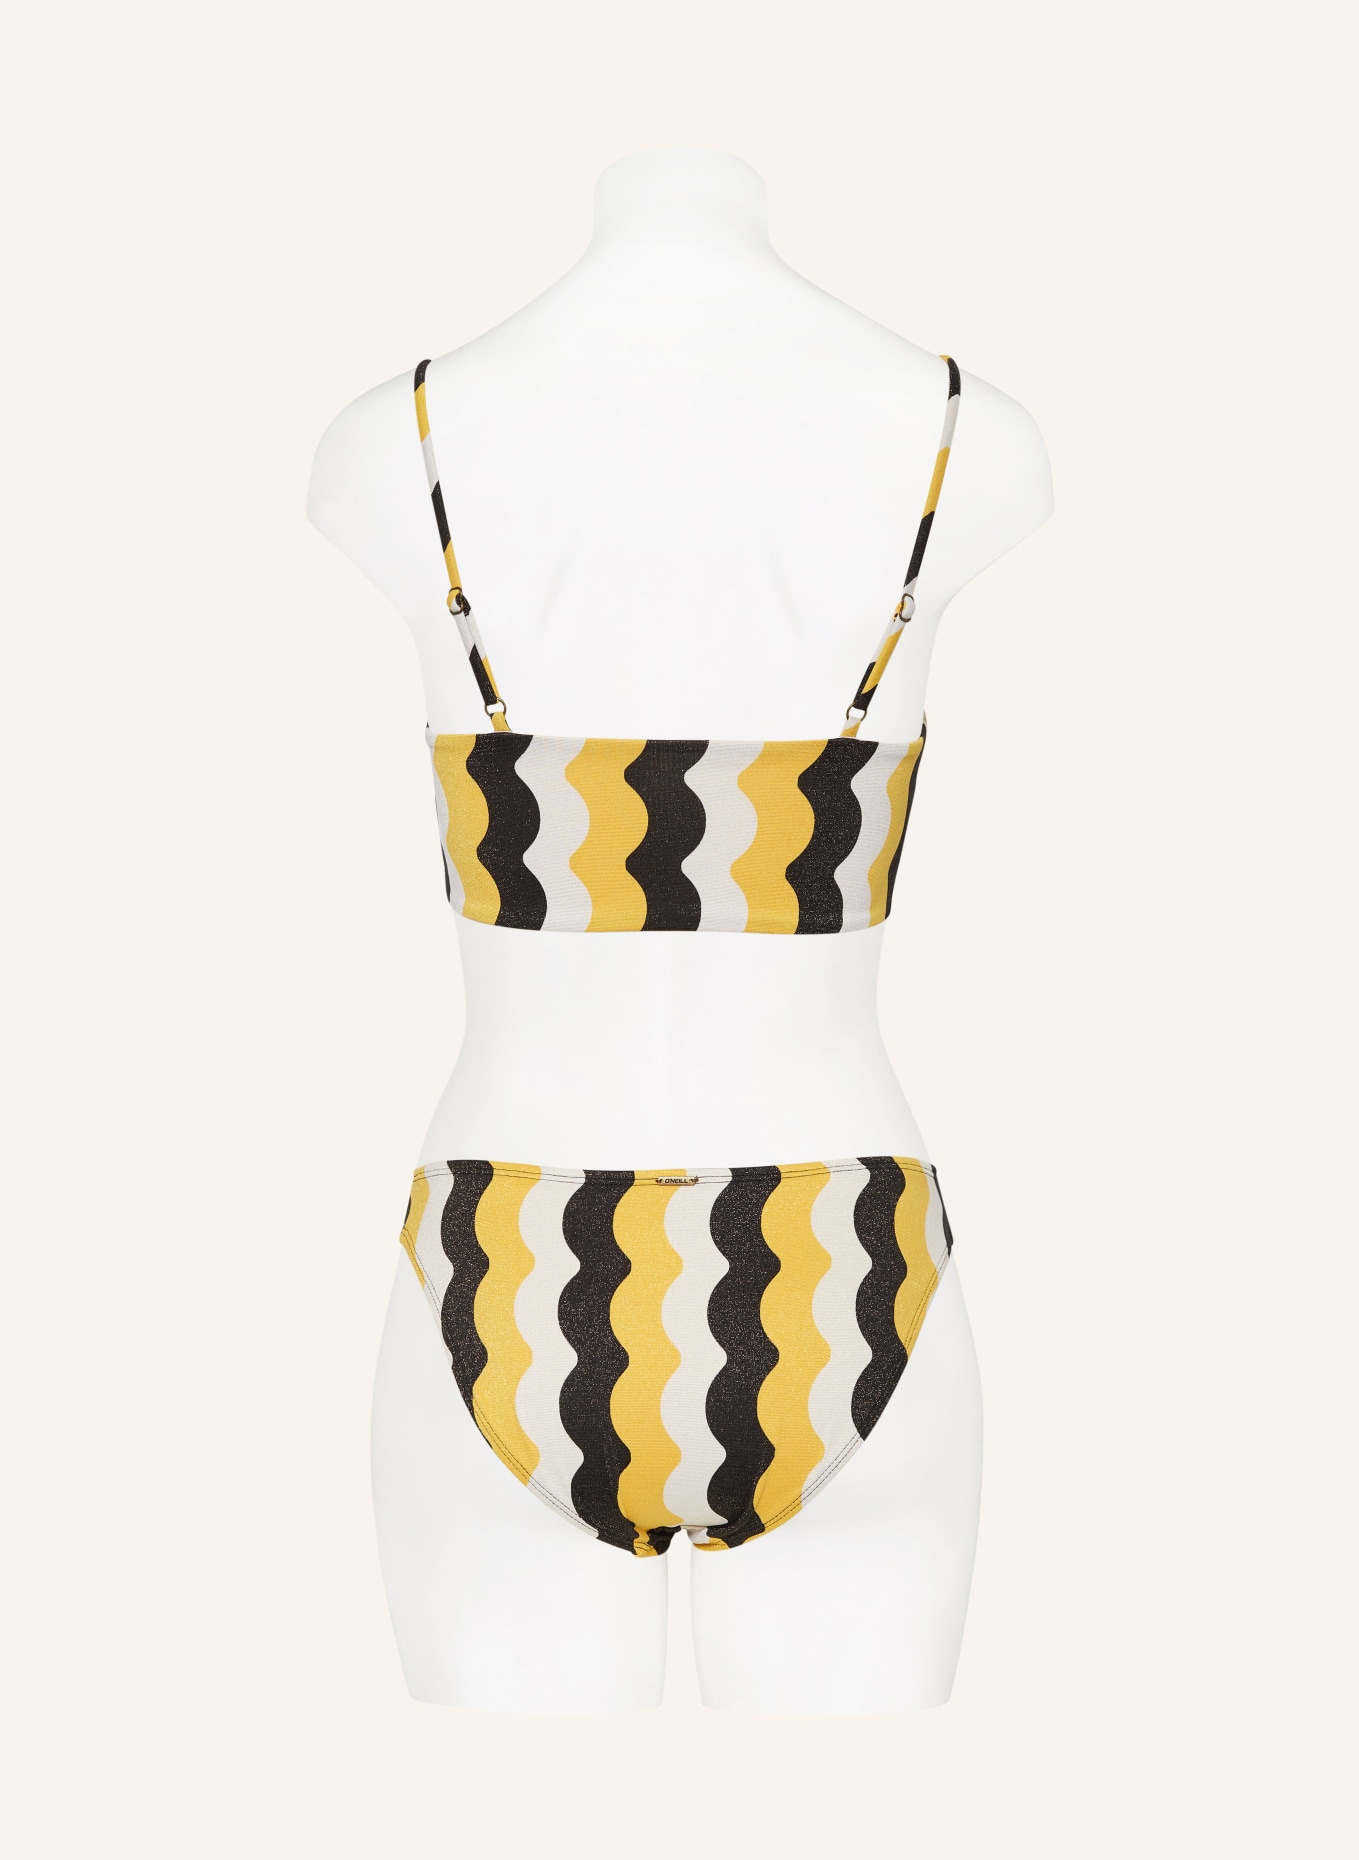 O'NEILL Bustier-Bikini BEACH VINTAGE MIDLES RITA mit Glitzergarn, Farbe: SCHWARZ/ WEISS/ DUNKELGELB (Bild 3)